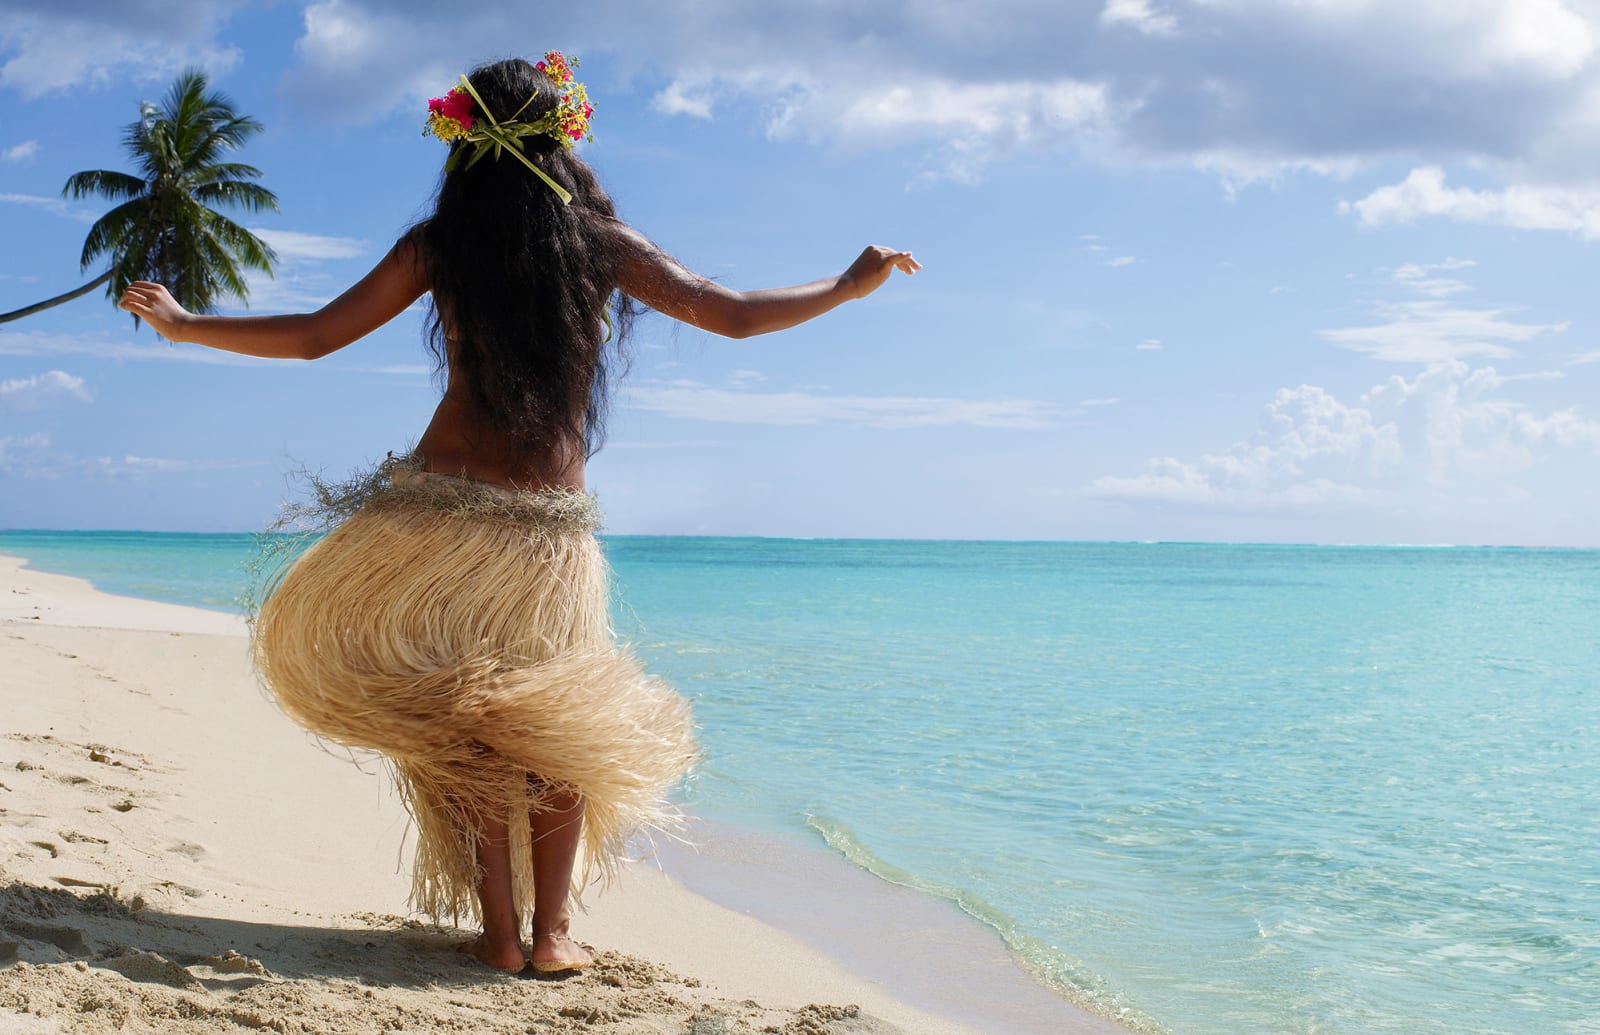 Tahiti beach culture